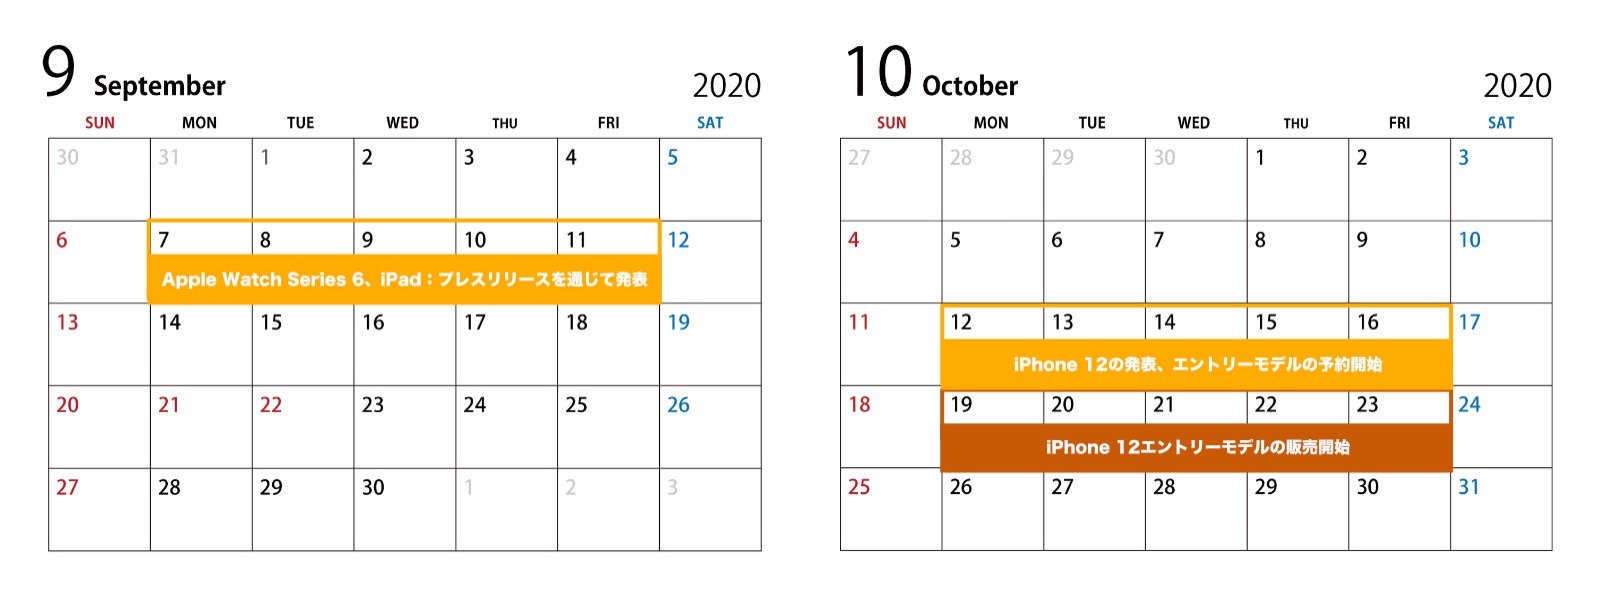 September and october 2020 Jon Prosser